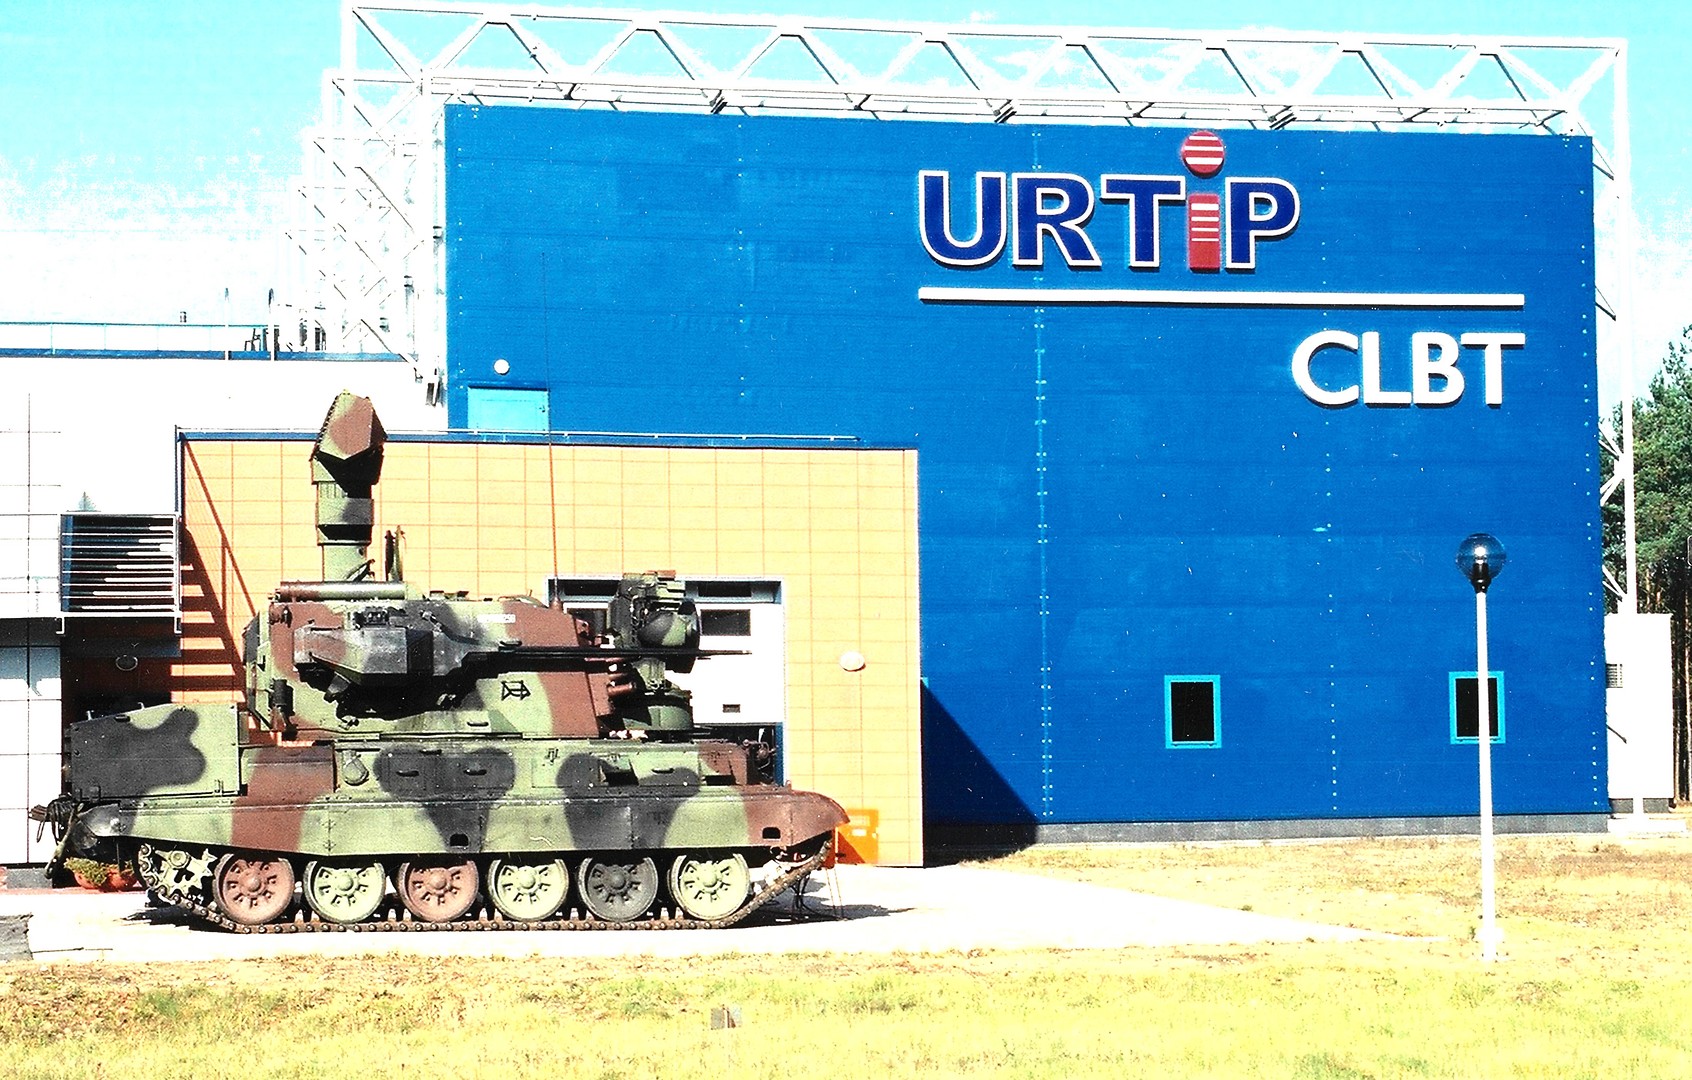 Samobieżny Zestaw Przeciwlotniczy PZR LOARA do badania na Otwartym Polu Pomiarowym - pojazd wojskowy przed budynkiem CLBT